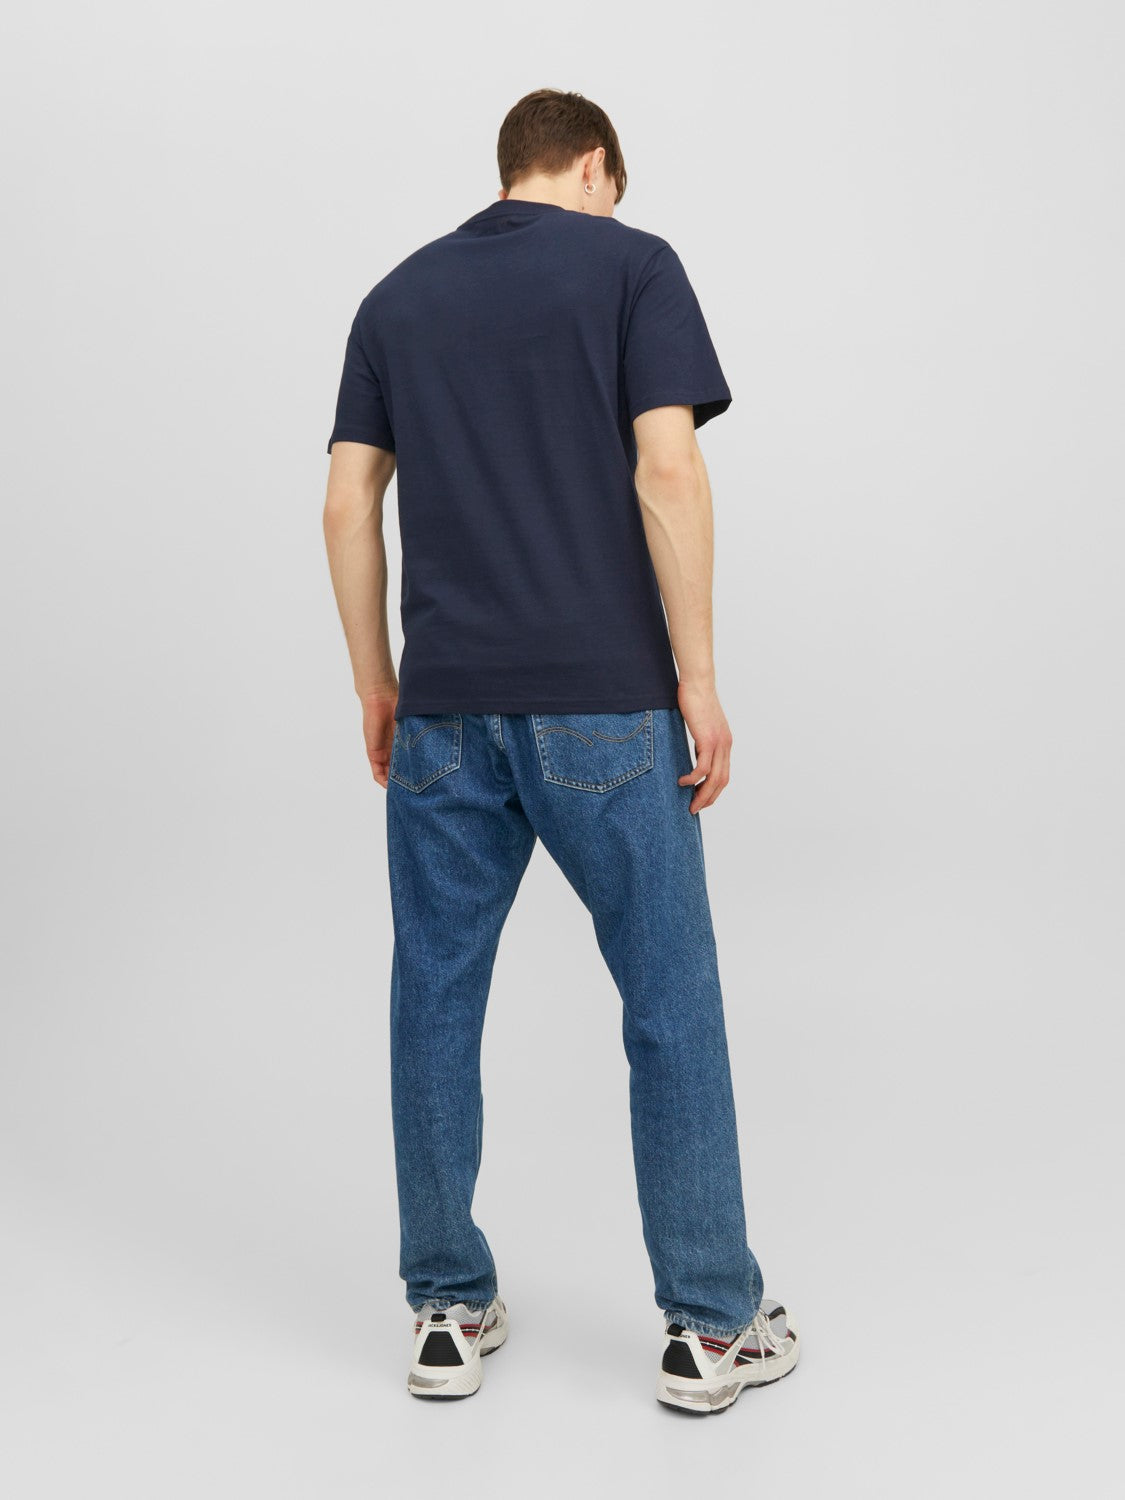 JORVESTERBRO T-Shirt Blue